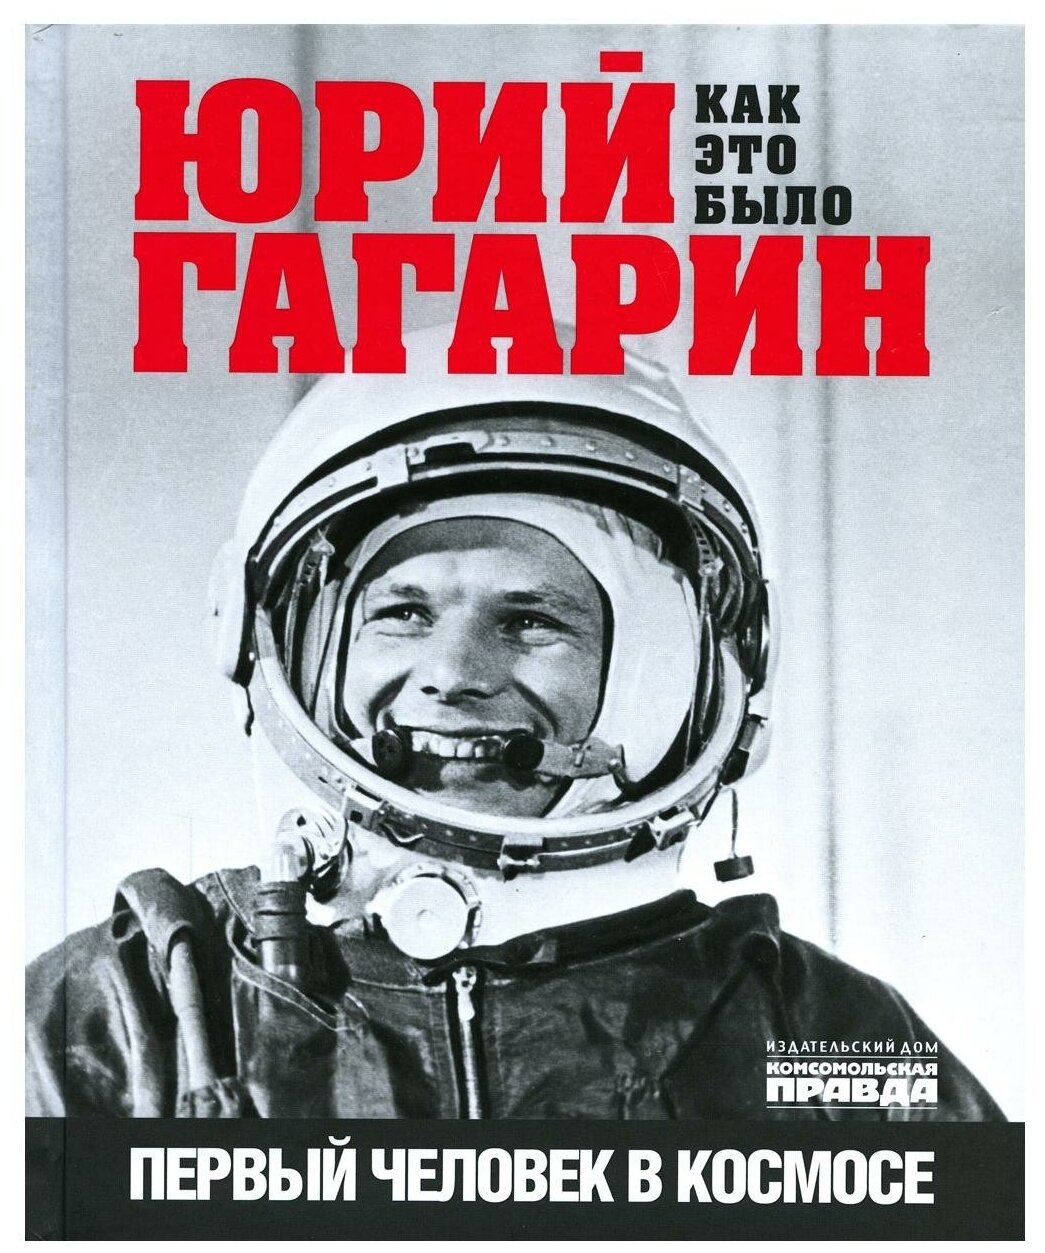 Юрий Гагарин. Как это было. Первый человек в космосе - фото №1